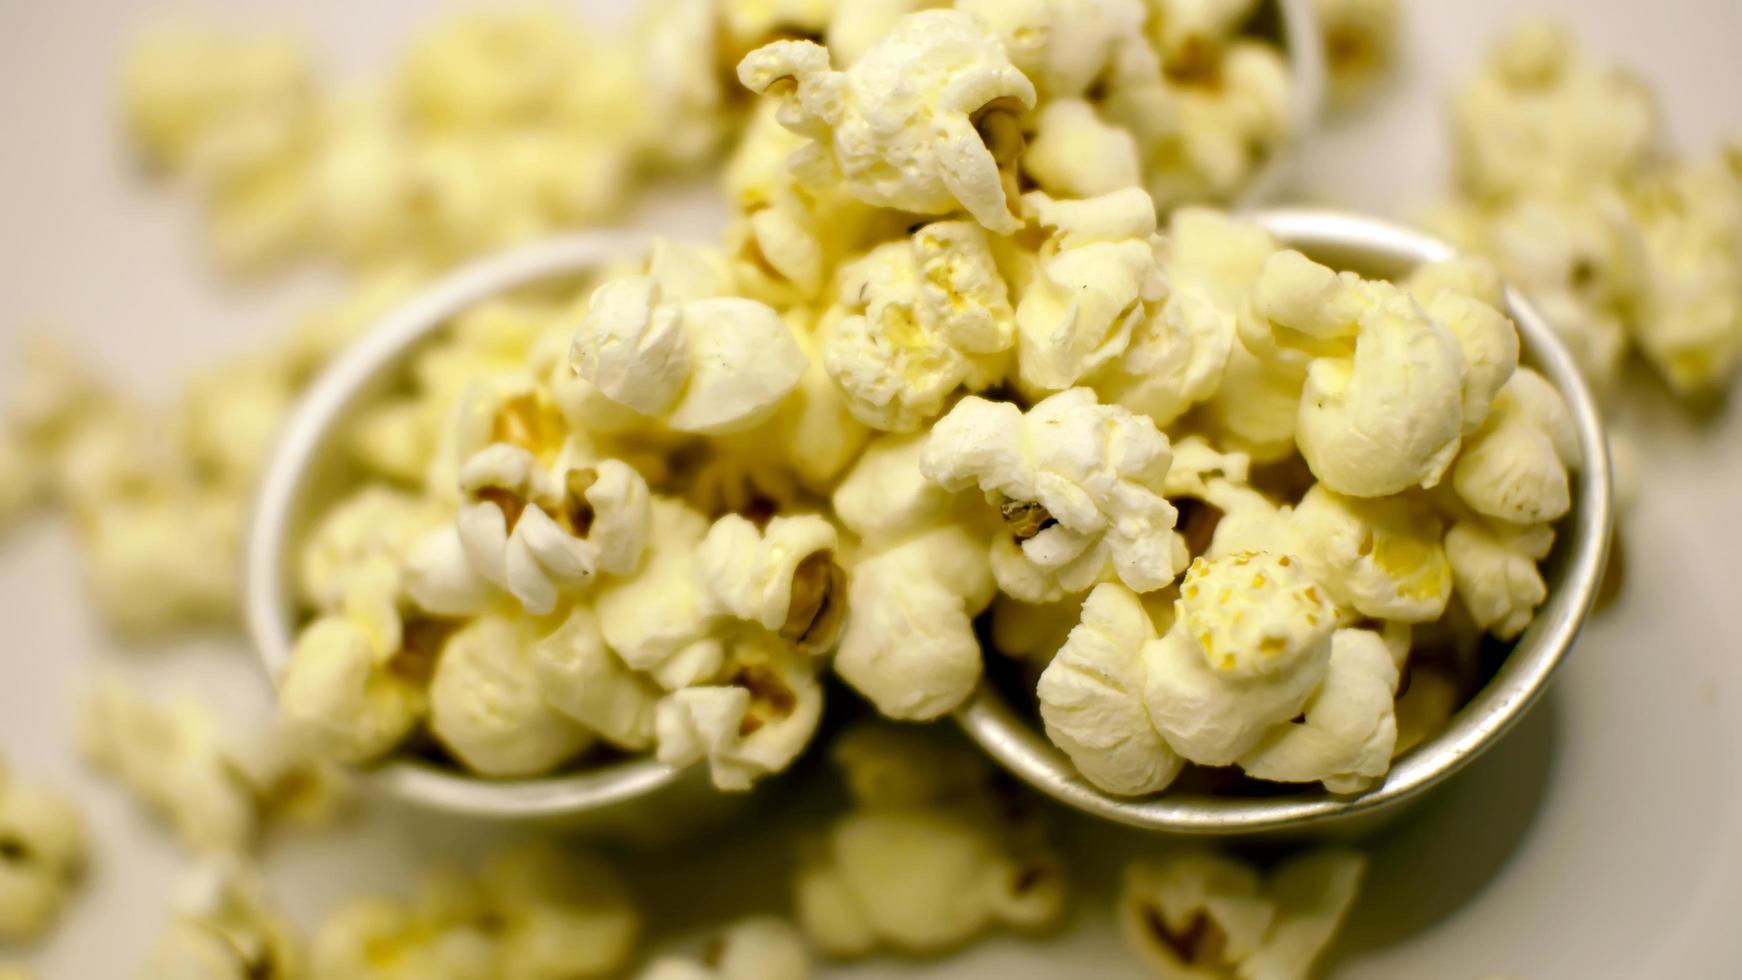 närbild av popcornkärnor på vit bakgrund i jpg-format foto